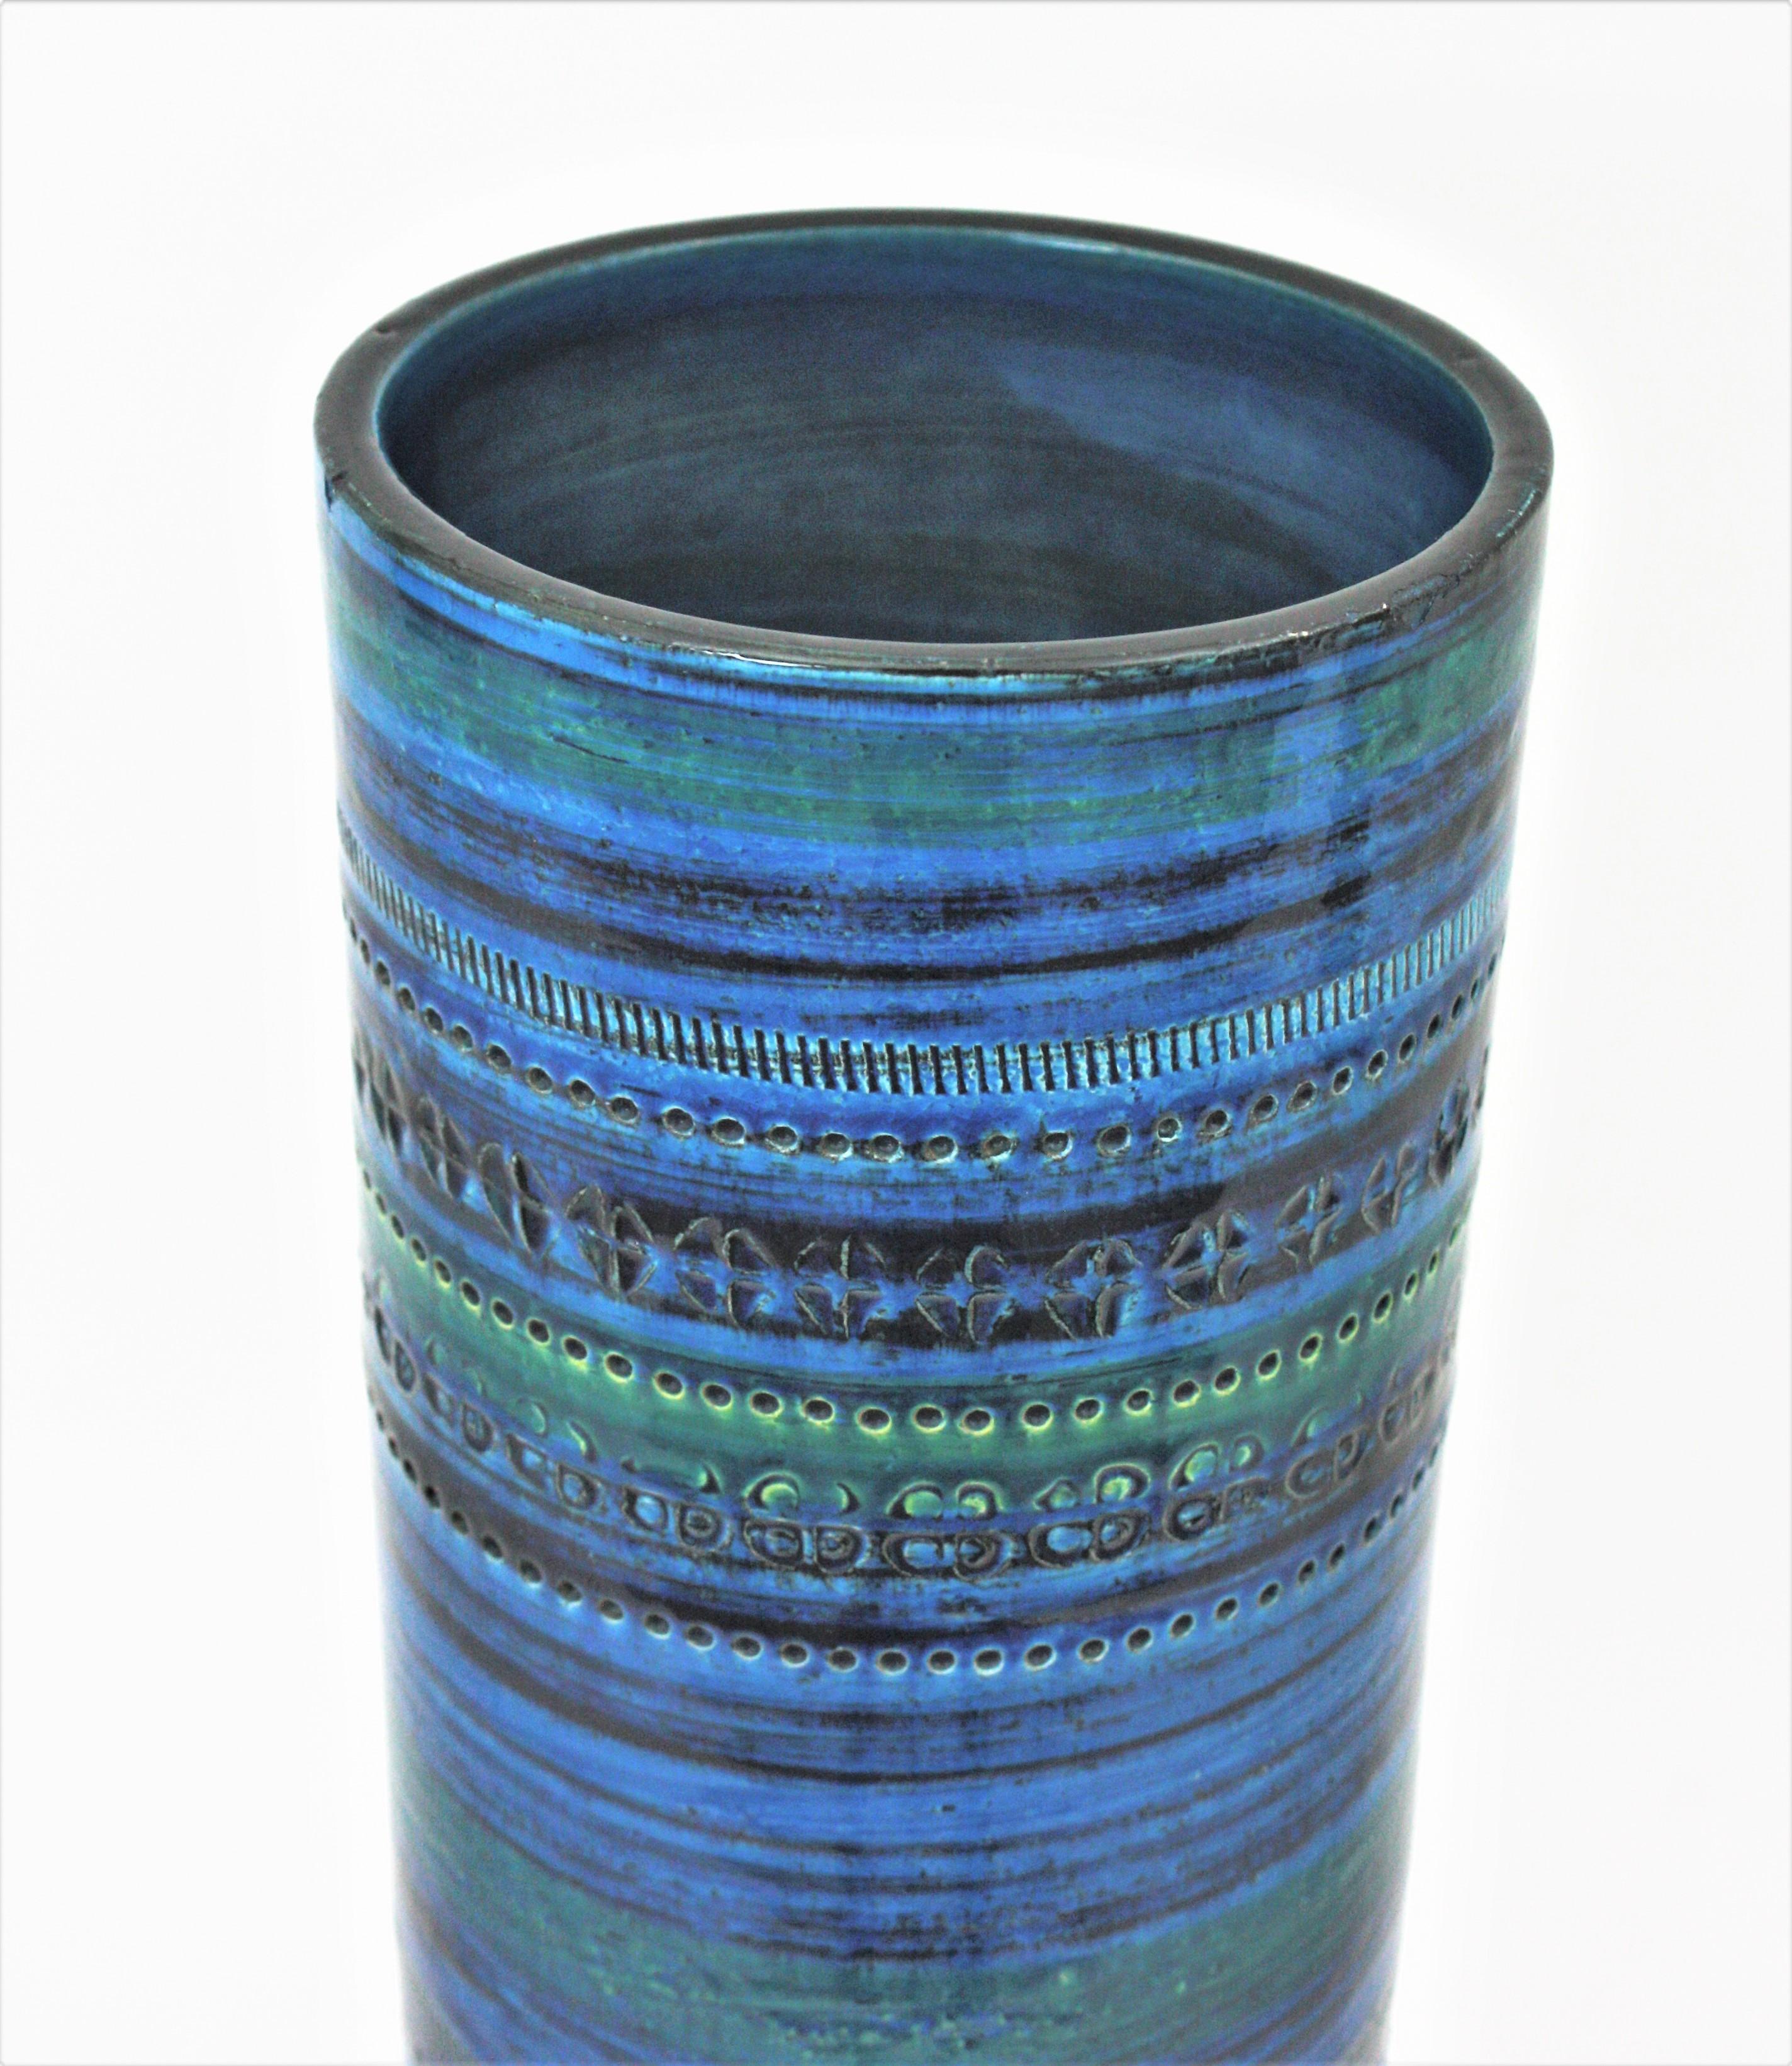 Aldo Londi Bitossi Rimini Blue Glazed Ceramic XL Vase, Italy, 1960s For Sale 1